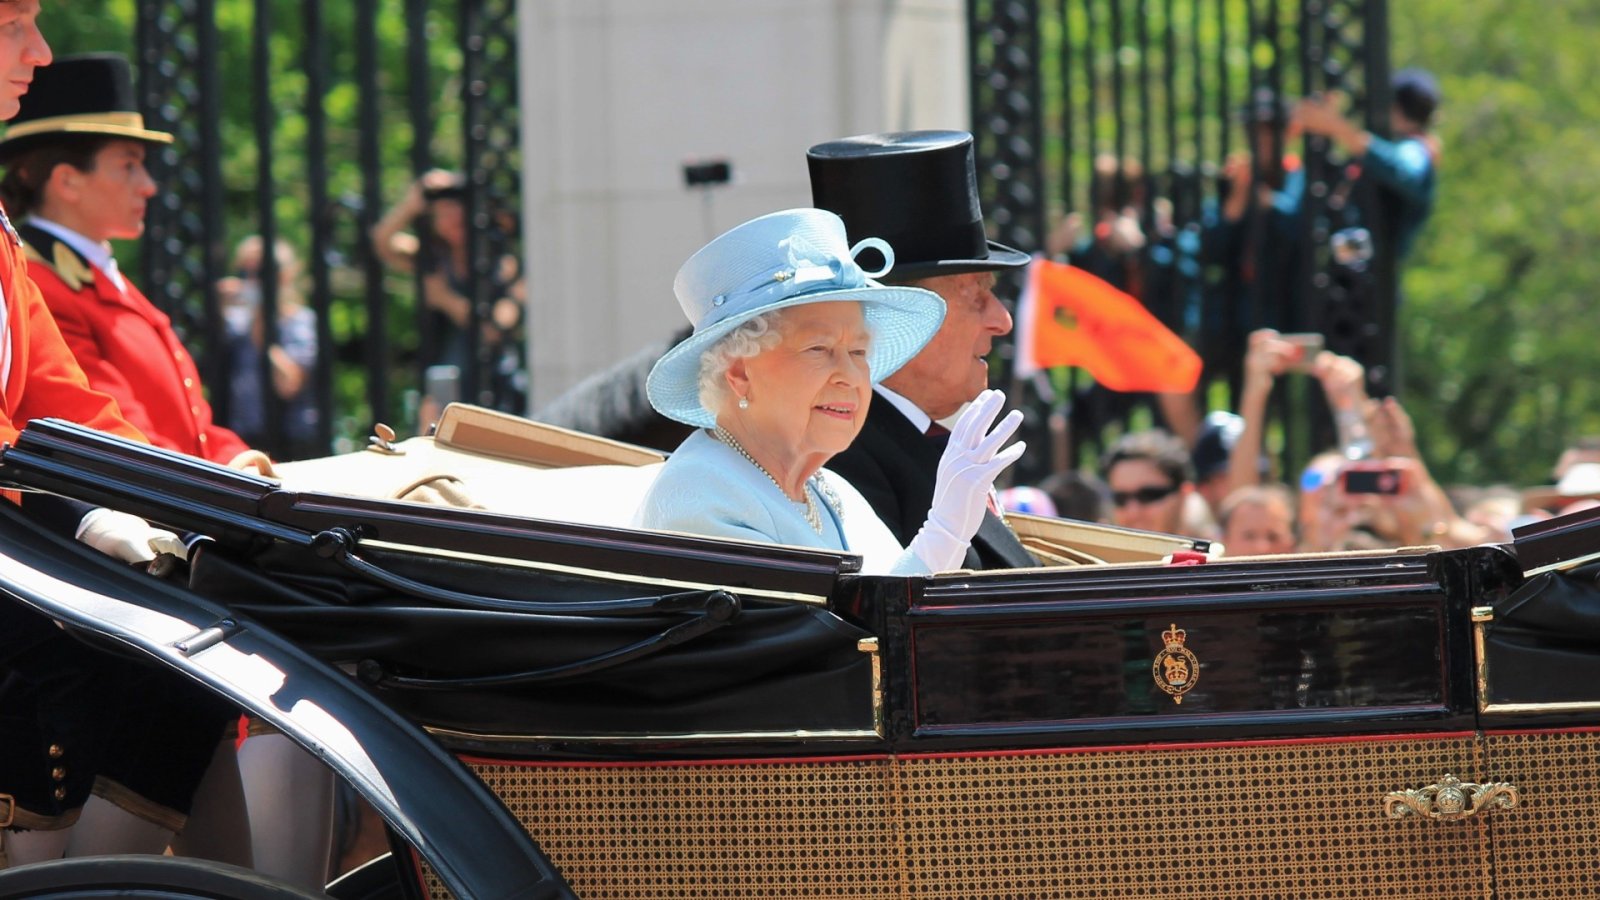 12 buitengewone feiten die je nog niet wist over de koningin